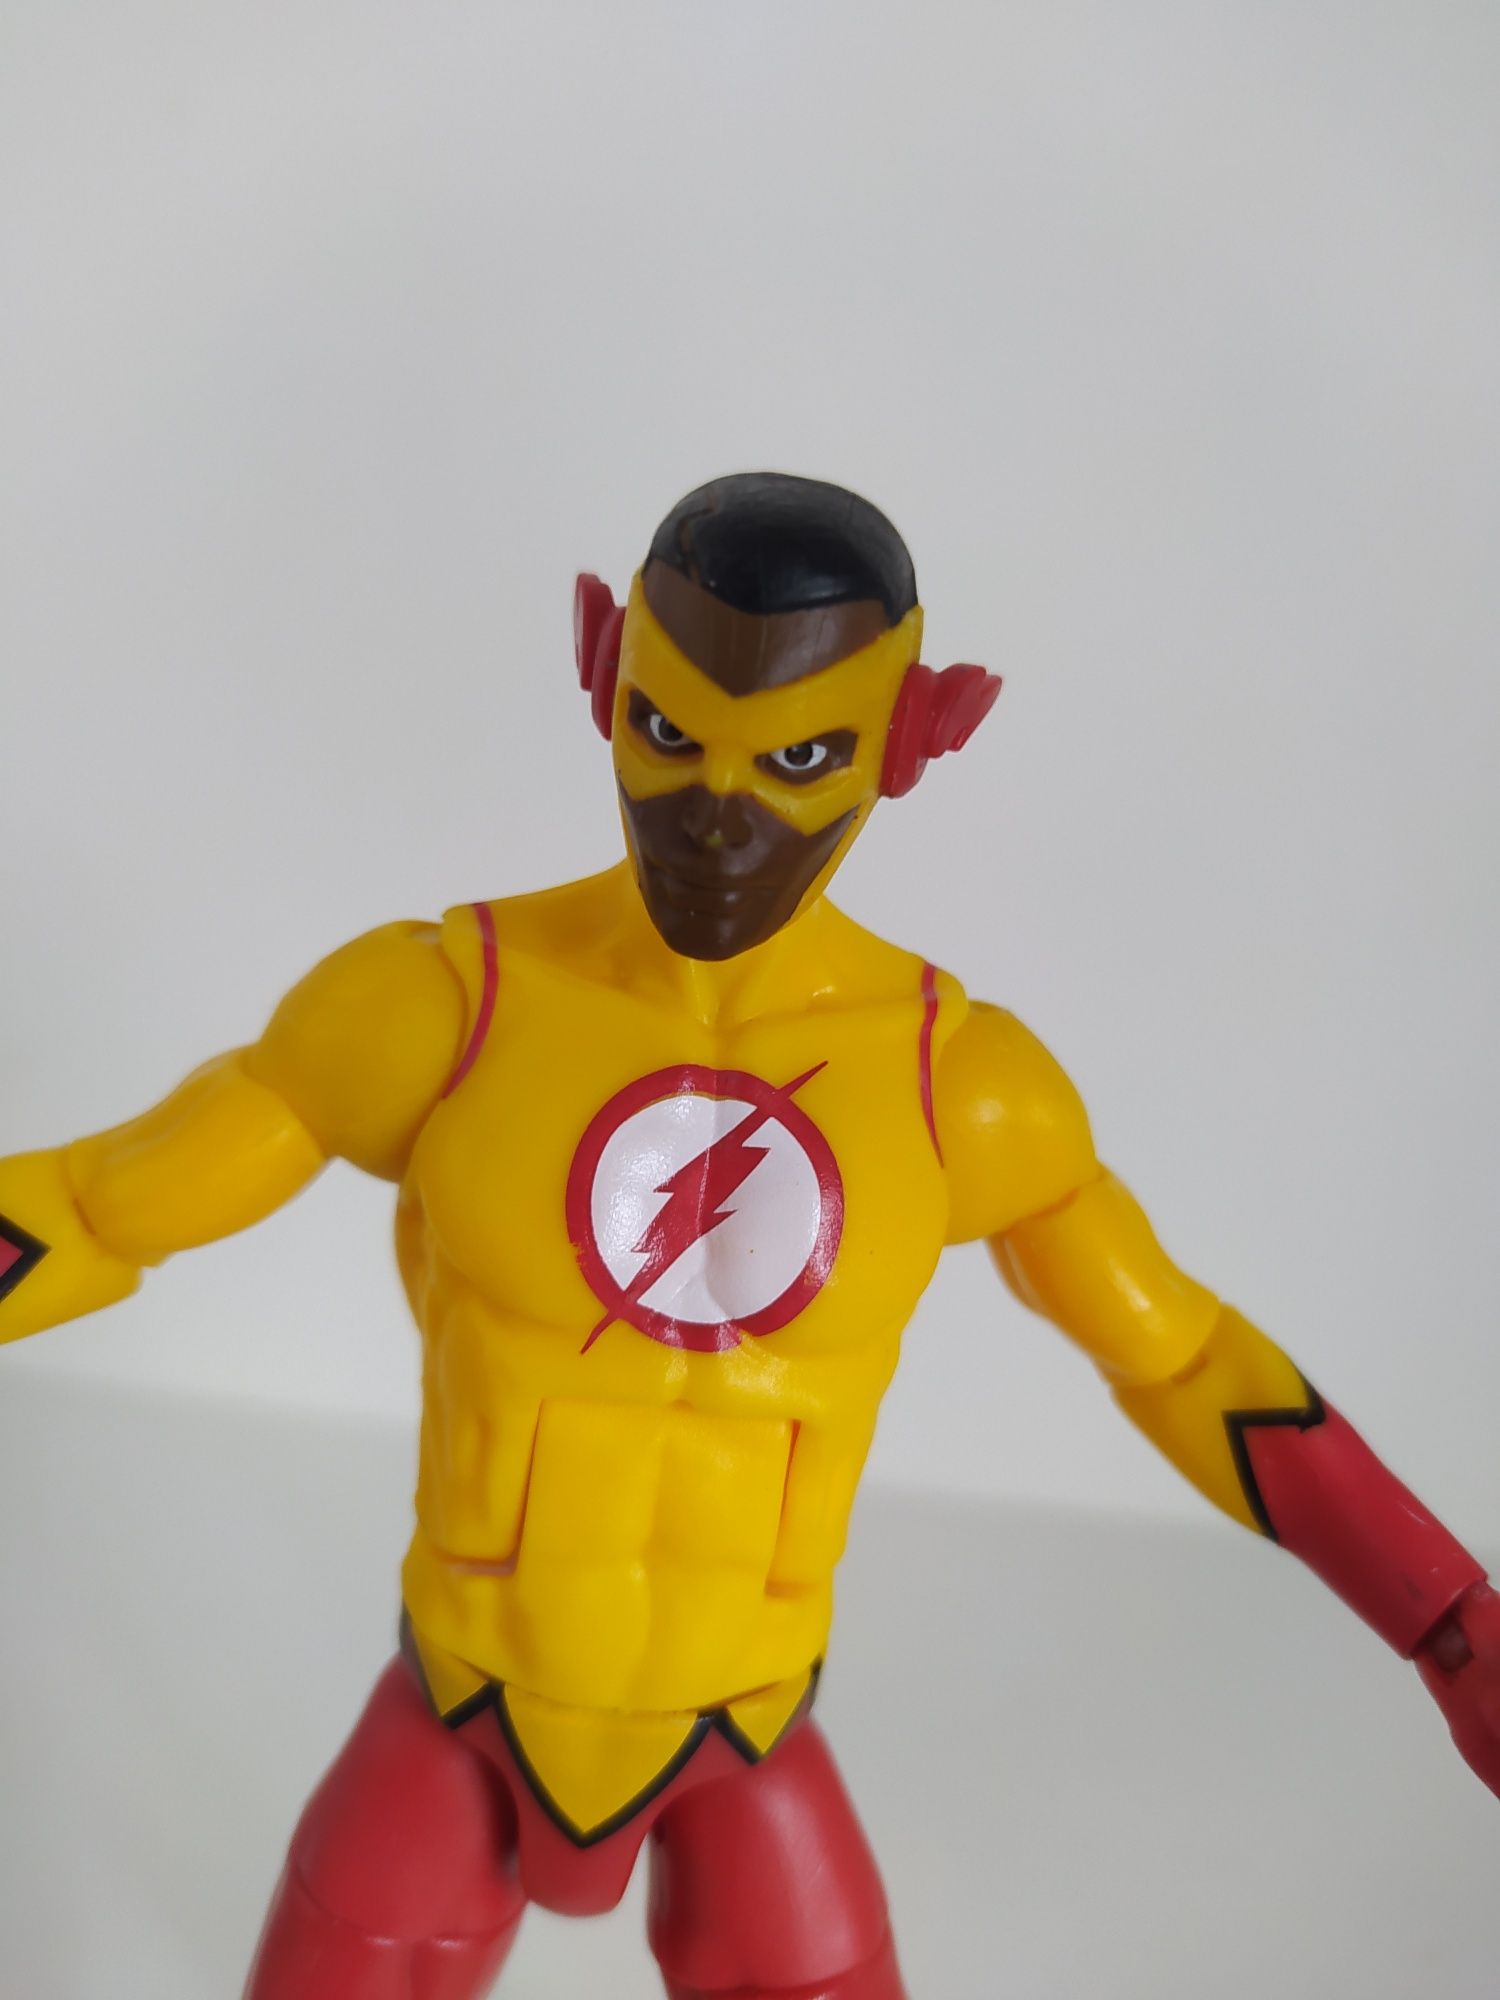 Figurka Kid Flash DC comics Multiverse Mattel superbohater